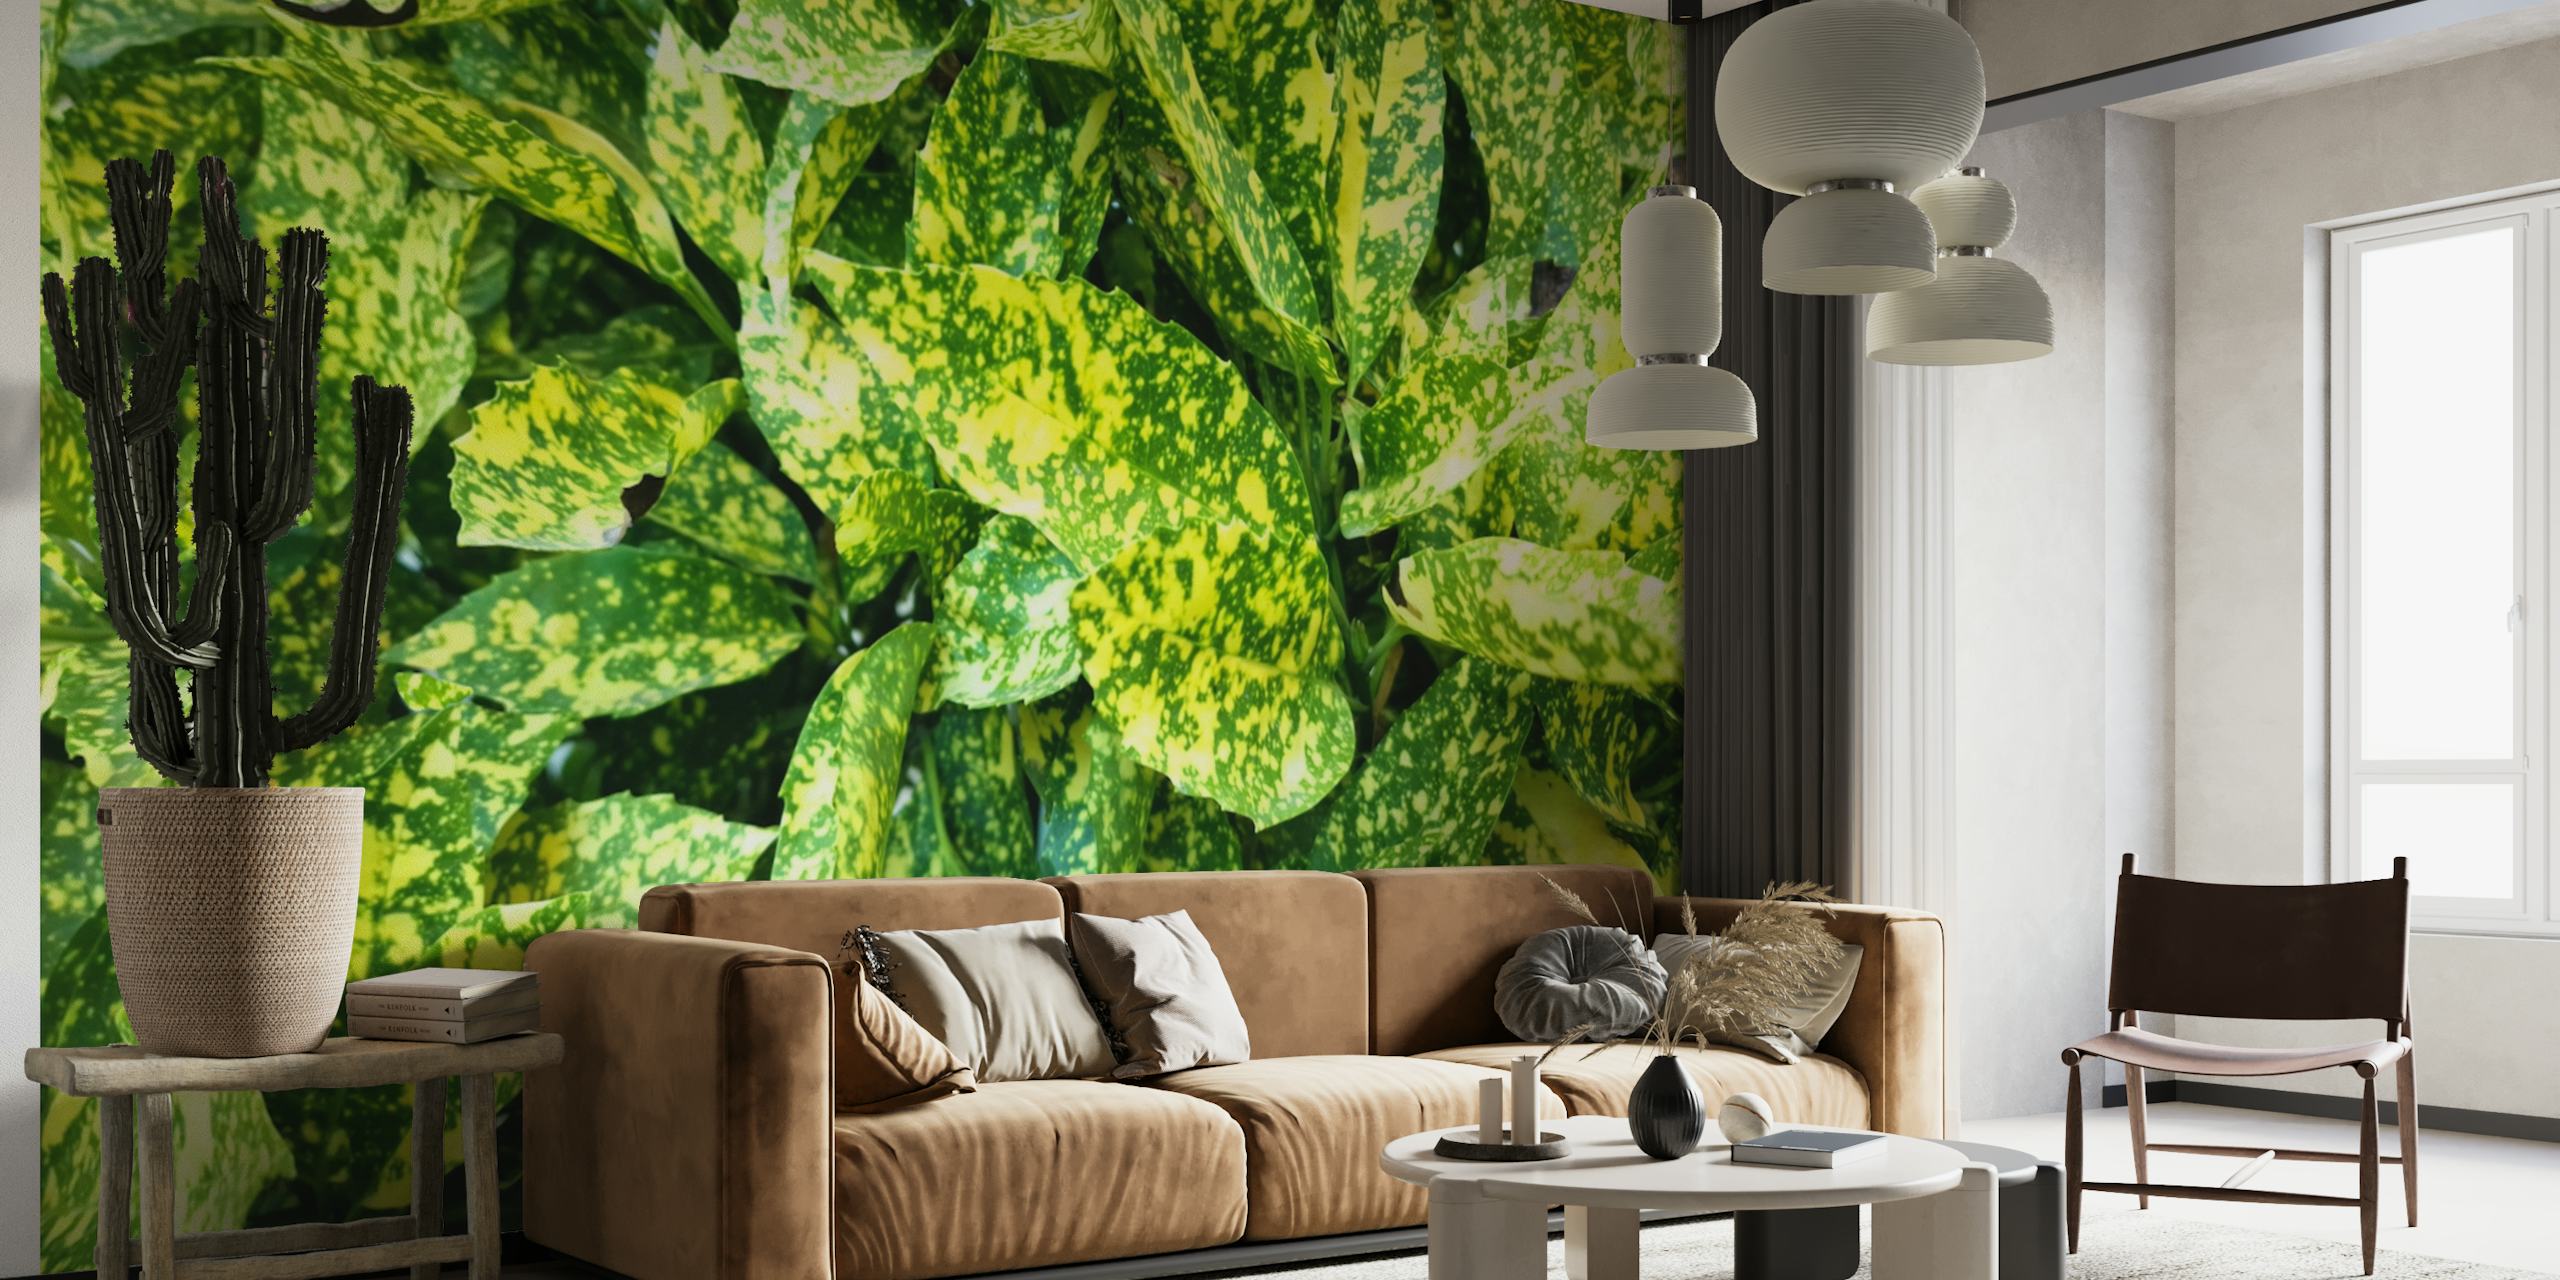 Üppig grünes Blättermuster-Wandbild für eine ruhige Inneneinrichtung